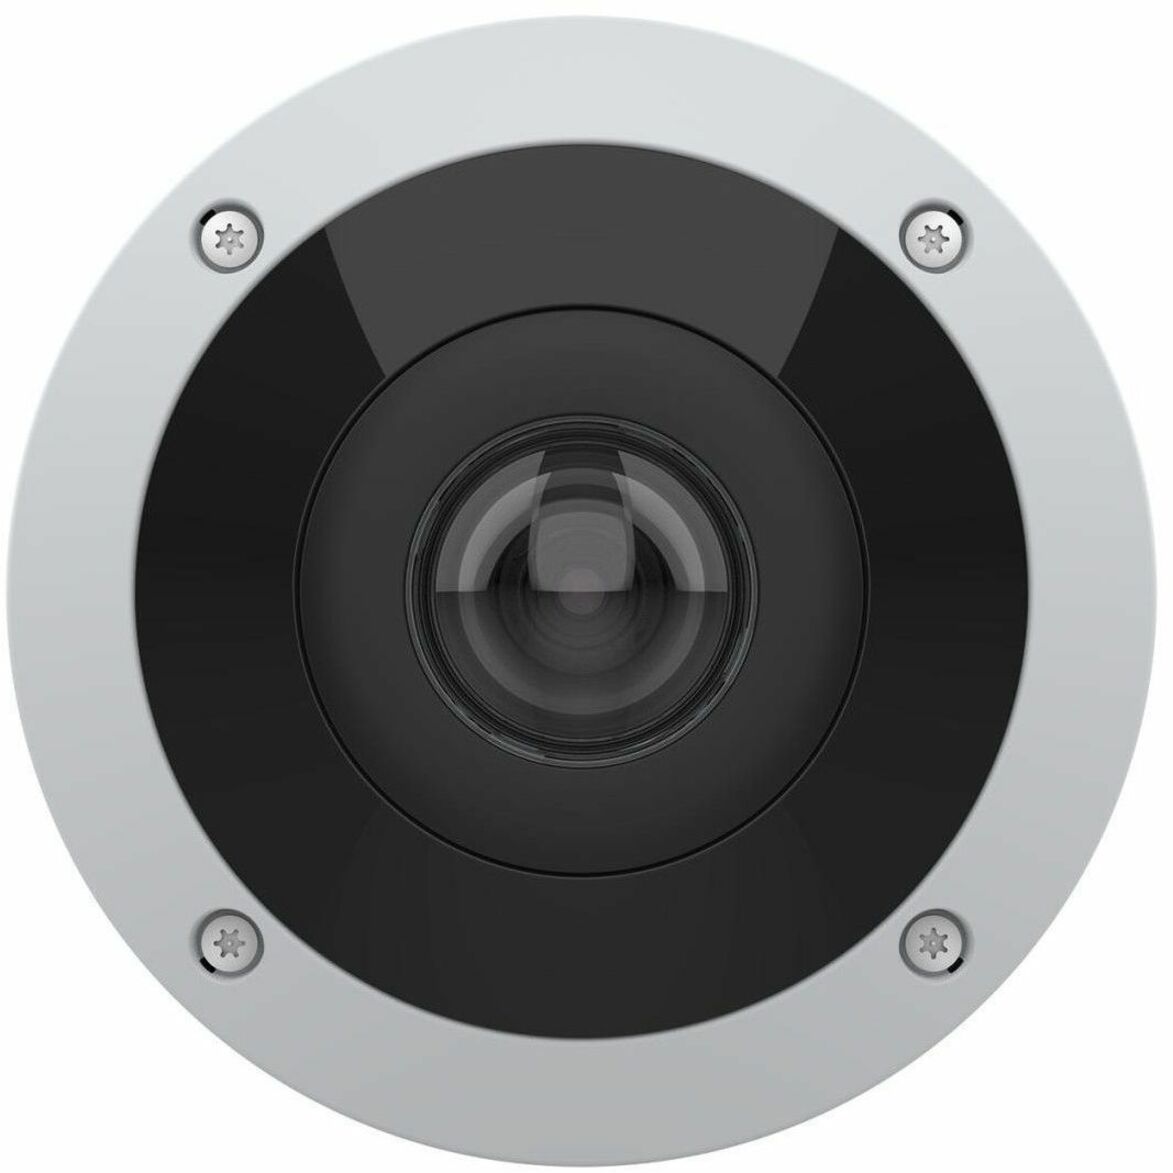 AXIS 02510-001 AXIS M4317-PLVE パノラミックカメラ、6メガピクセル、屋外、182°視野角、ナイトビジョン、PoE アクシス